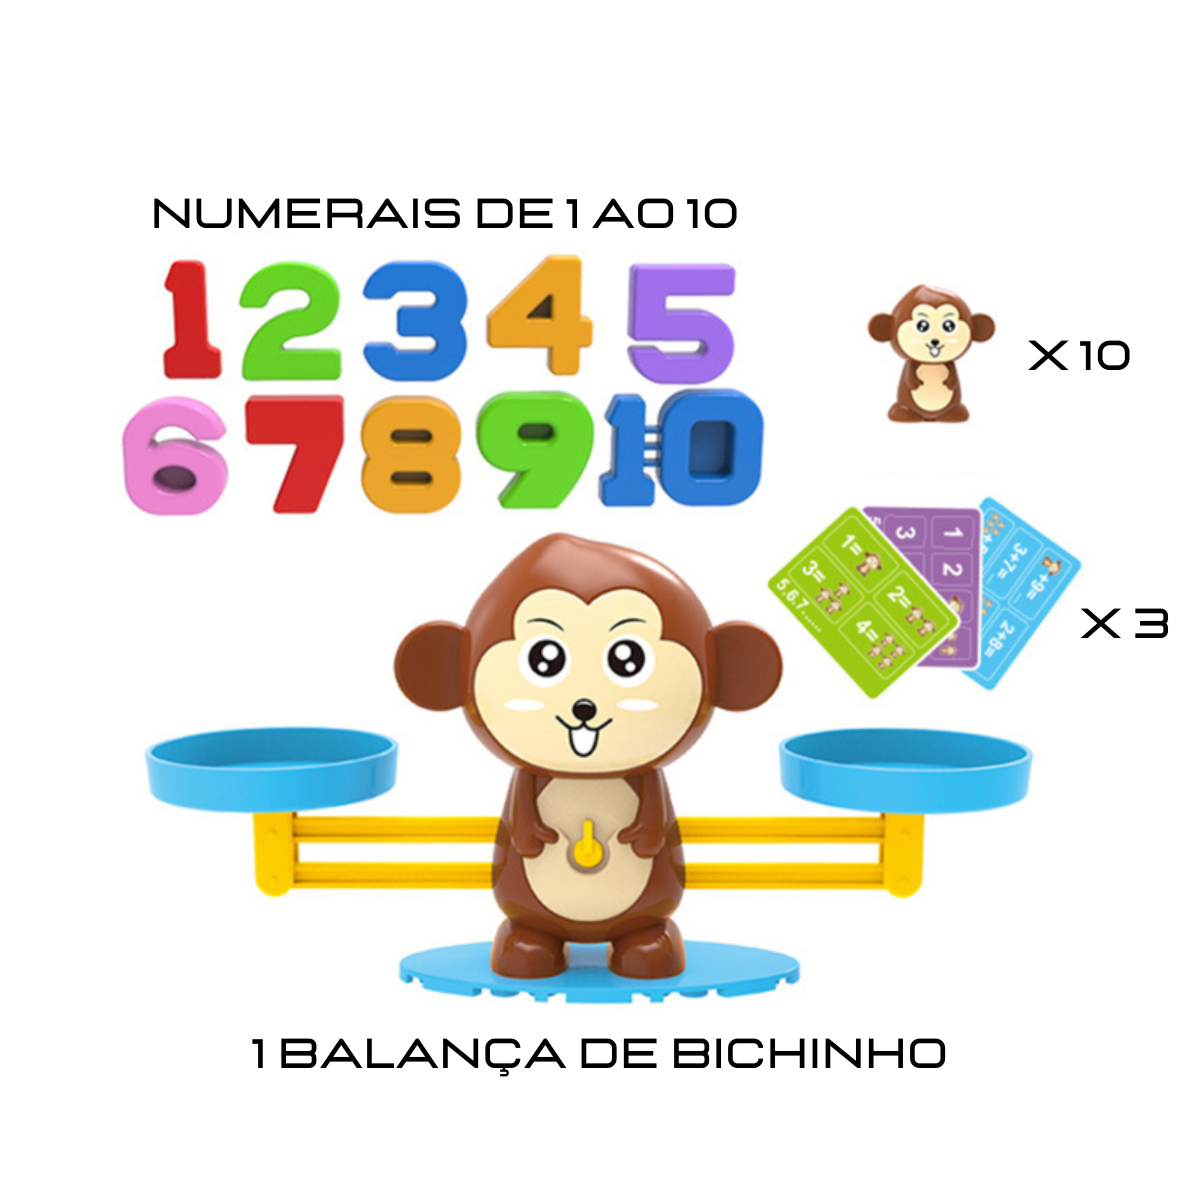 Brinquedos de matemática para crianças, jogo de equilíbrio para aprender,  educação, macaco, brinquedo infantil montessoriano